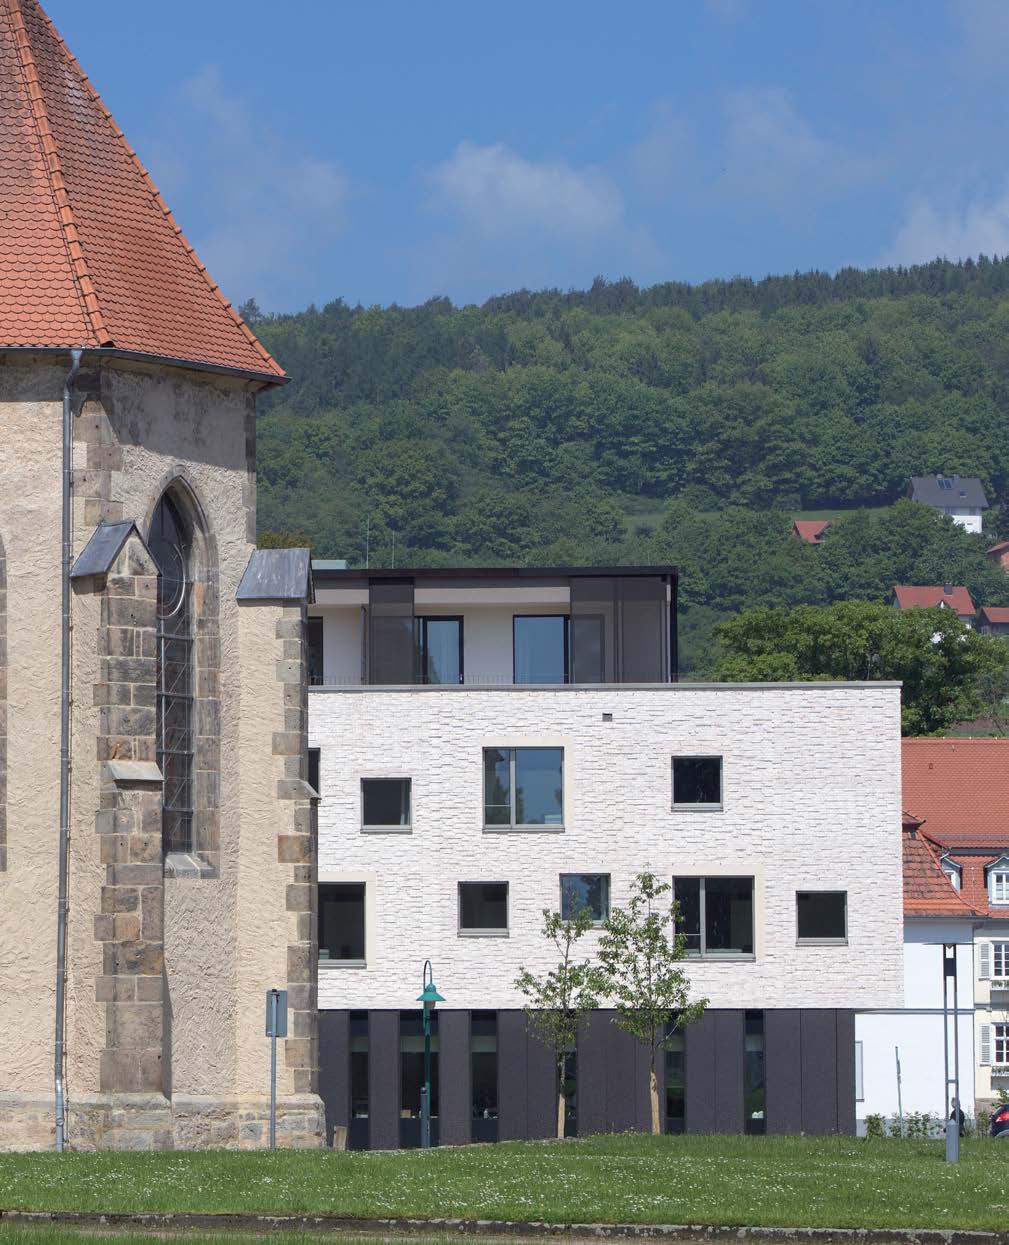 Denkmal in Nordhessen Eingebettet im landschaftlich reizvollen Fuldatal liegt das Kloster Haydau, ein denkmalgeschütztes Anwesen mit Kloster, Kirche, Wirtschaftsgebäuden, Herrenhaus, Orangerie und